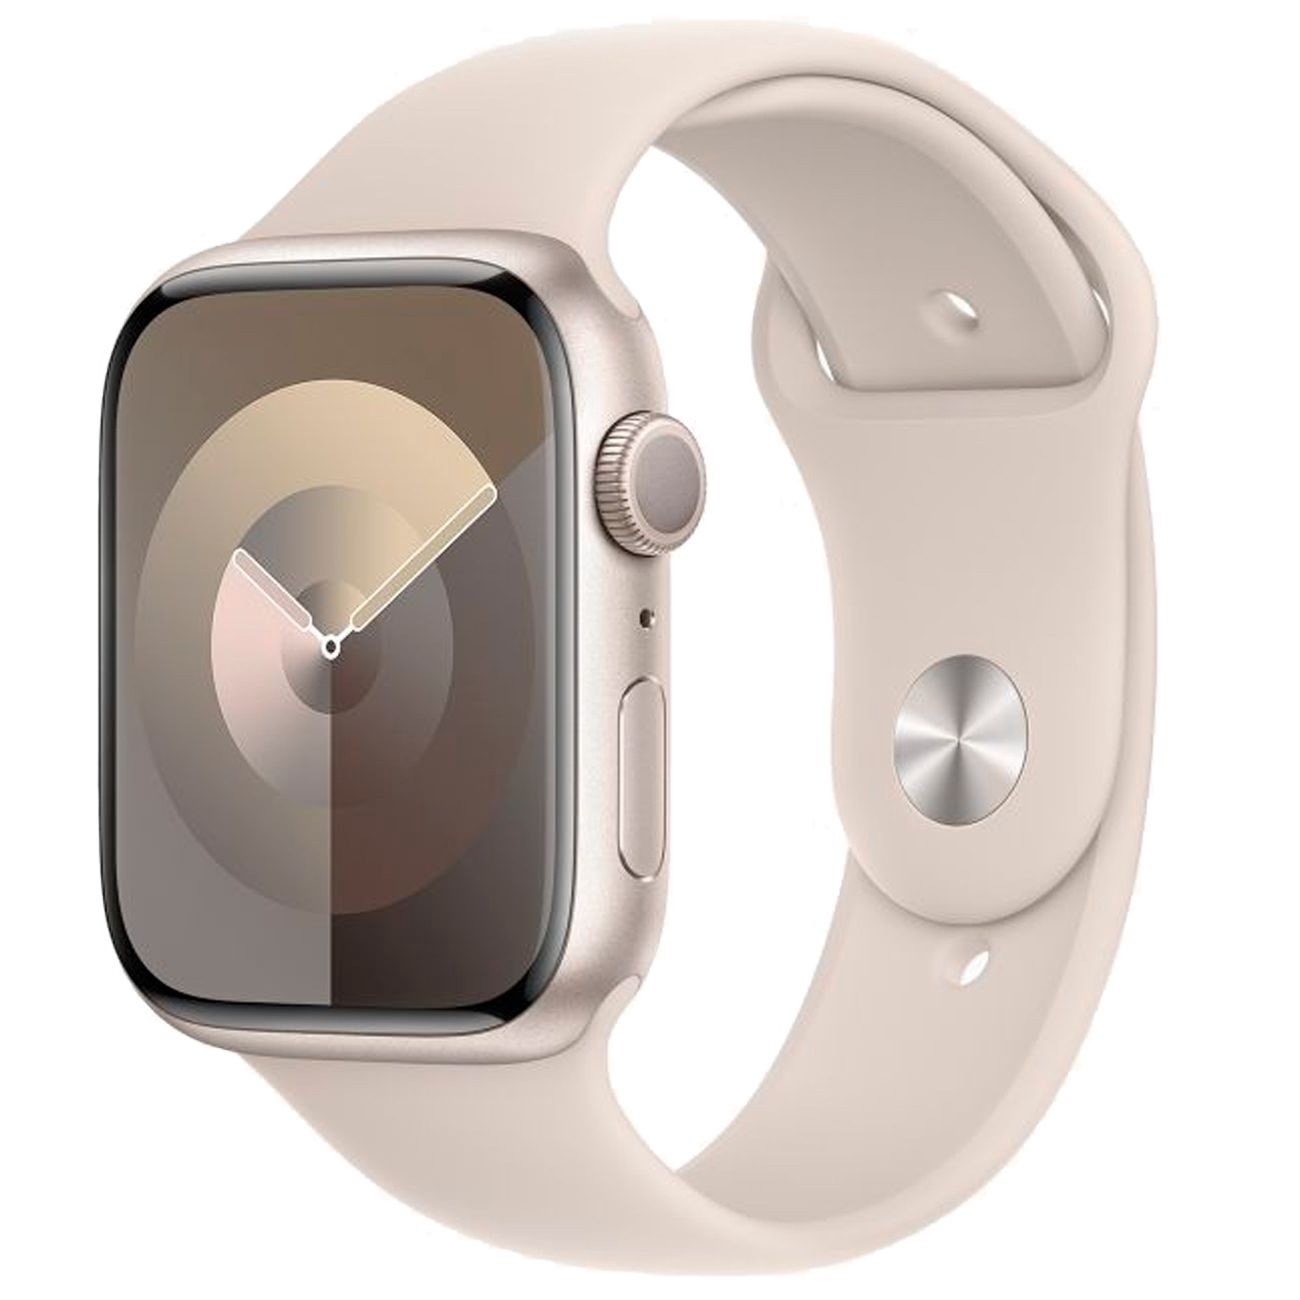 Купить смарт-часы apple watch s9 45mm starlight aluminium Apple Watch 9 в официальном магазине Apple, Samsung, Xiaomi. iPixel.ru Купить, заказ, кредит, рассрочка, отзывы,  характеристики, цена,  фотографии, в подарок.